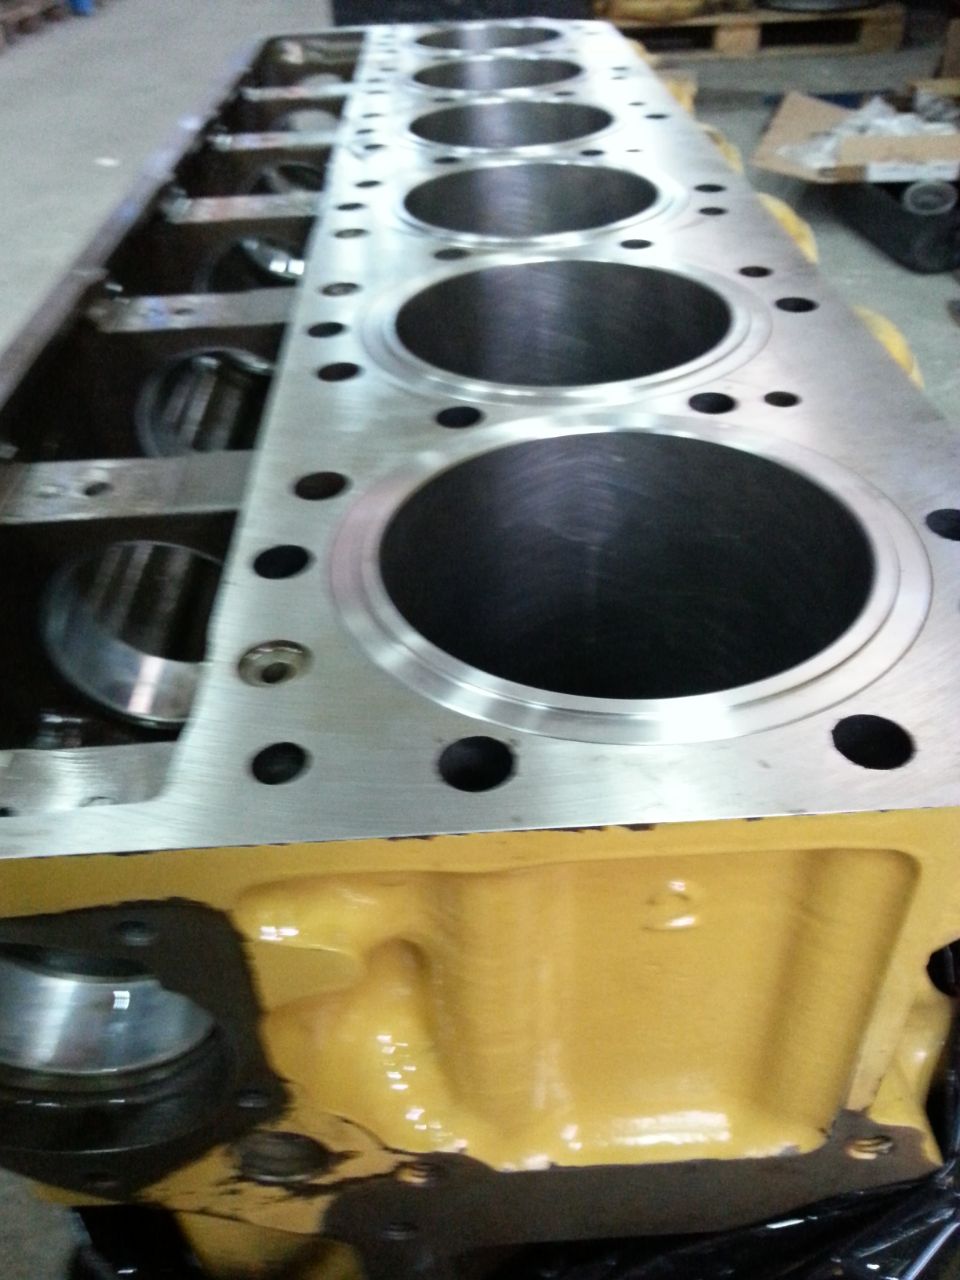 Cat 345 Rebuilt Engine